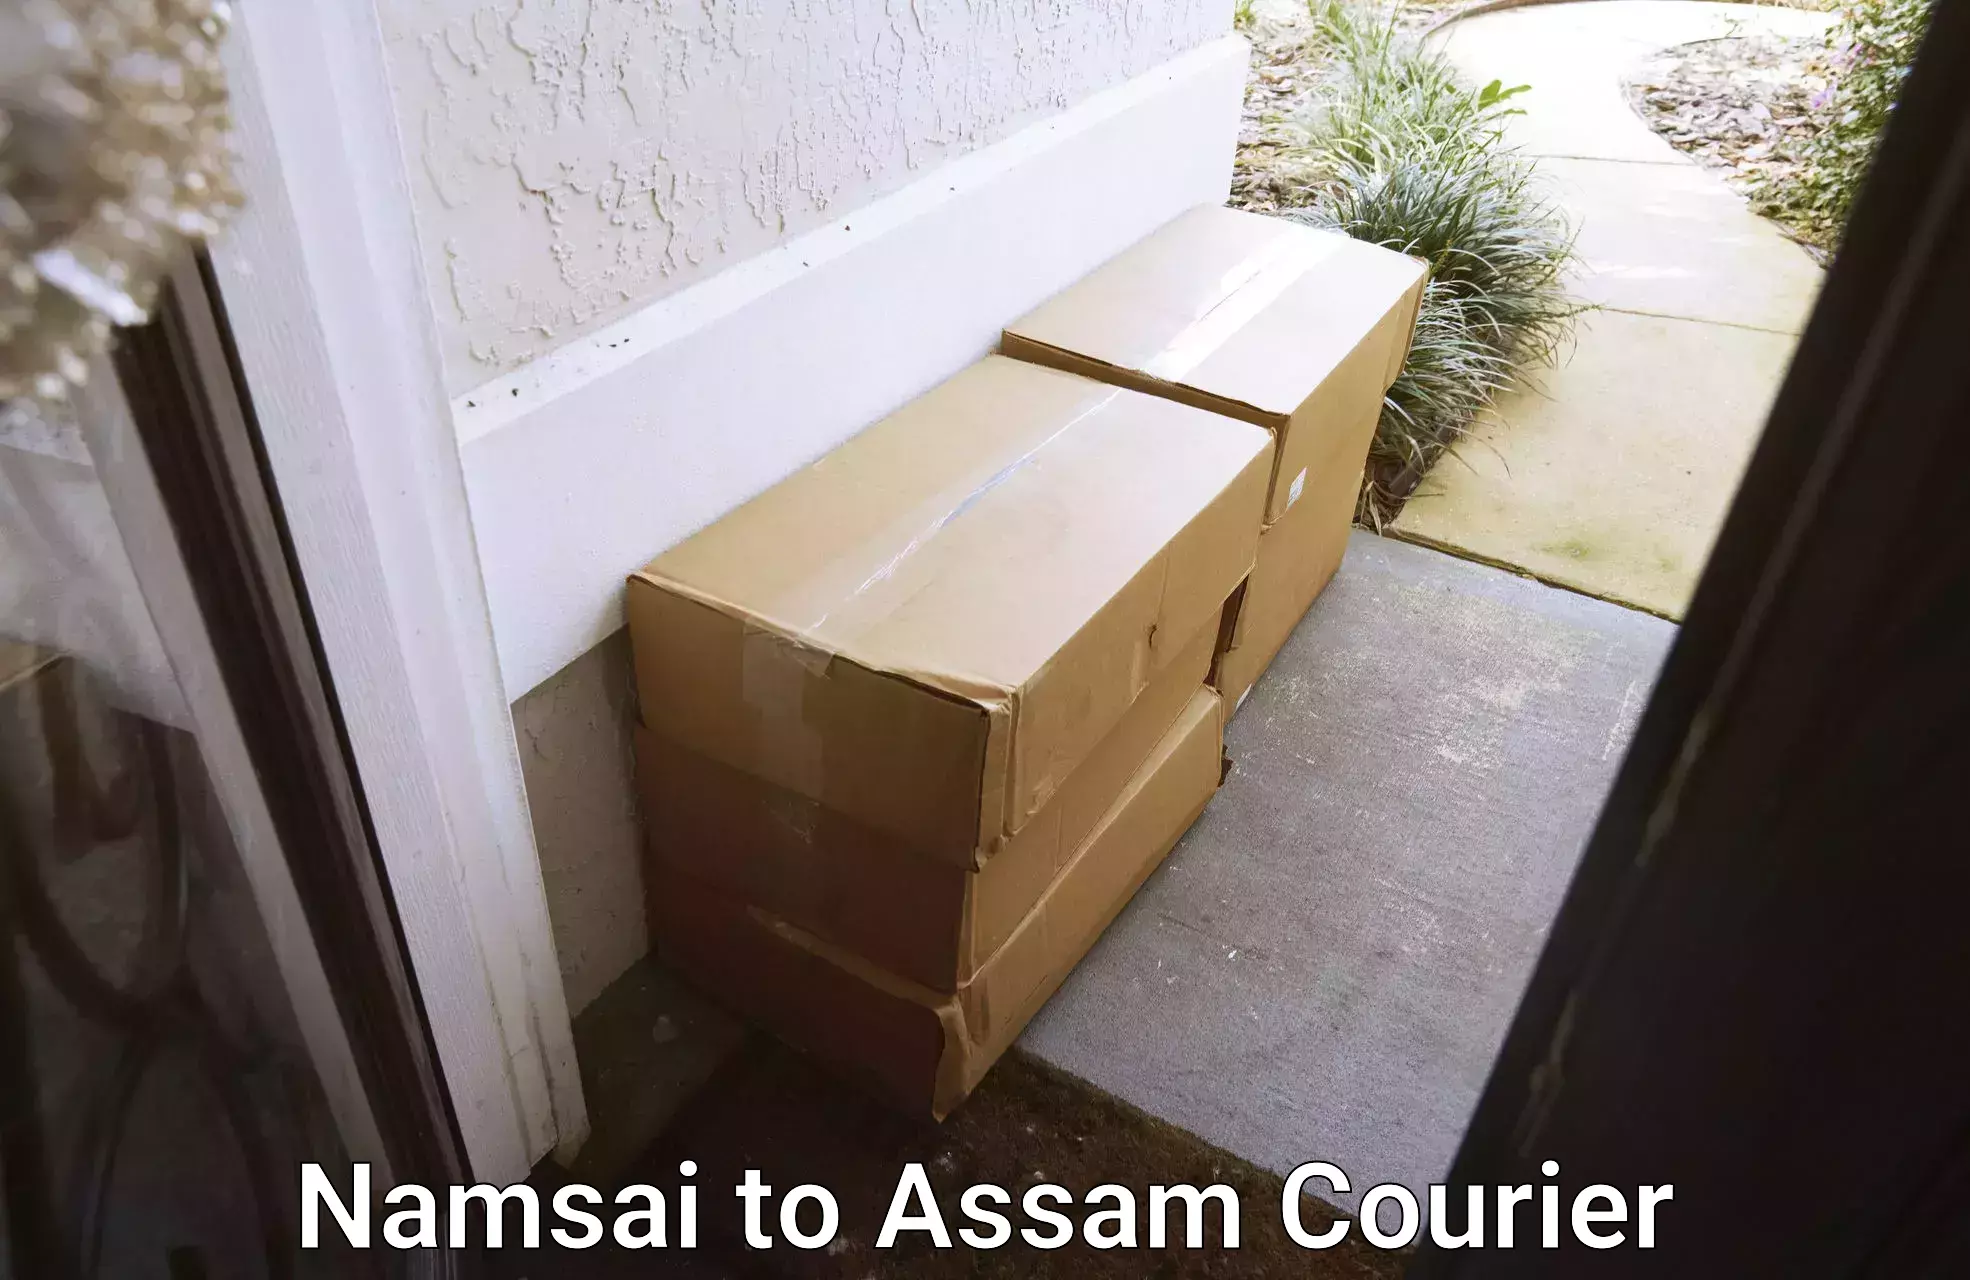 Next day courier Namsai to Barpeta